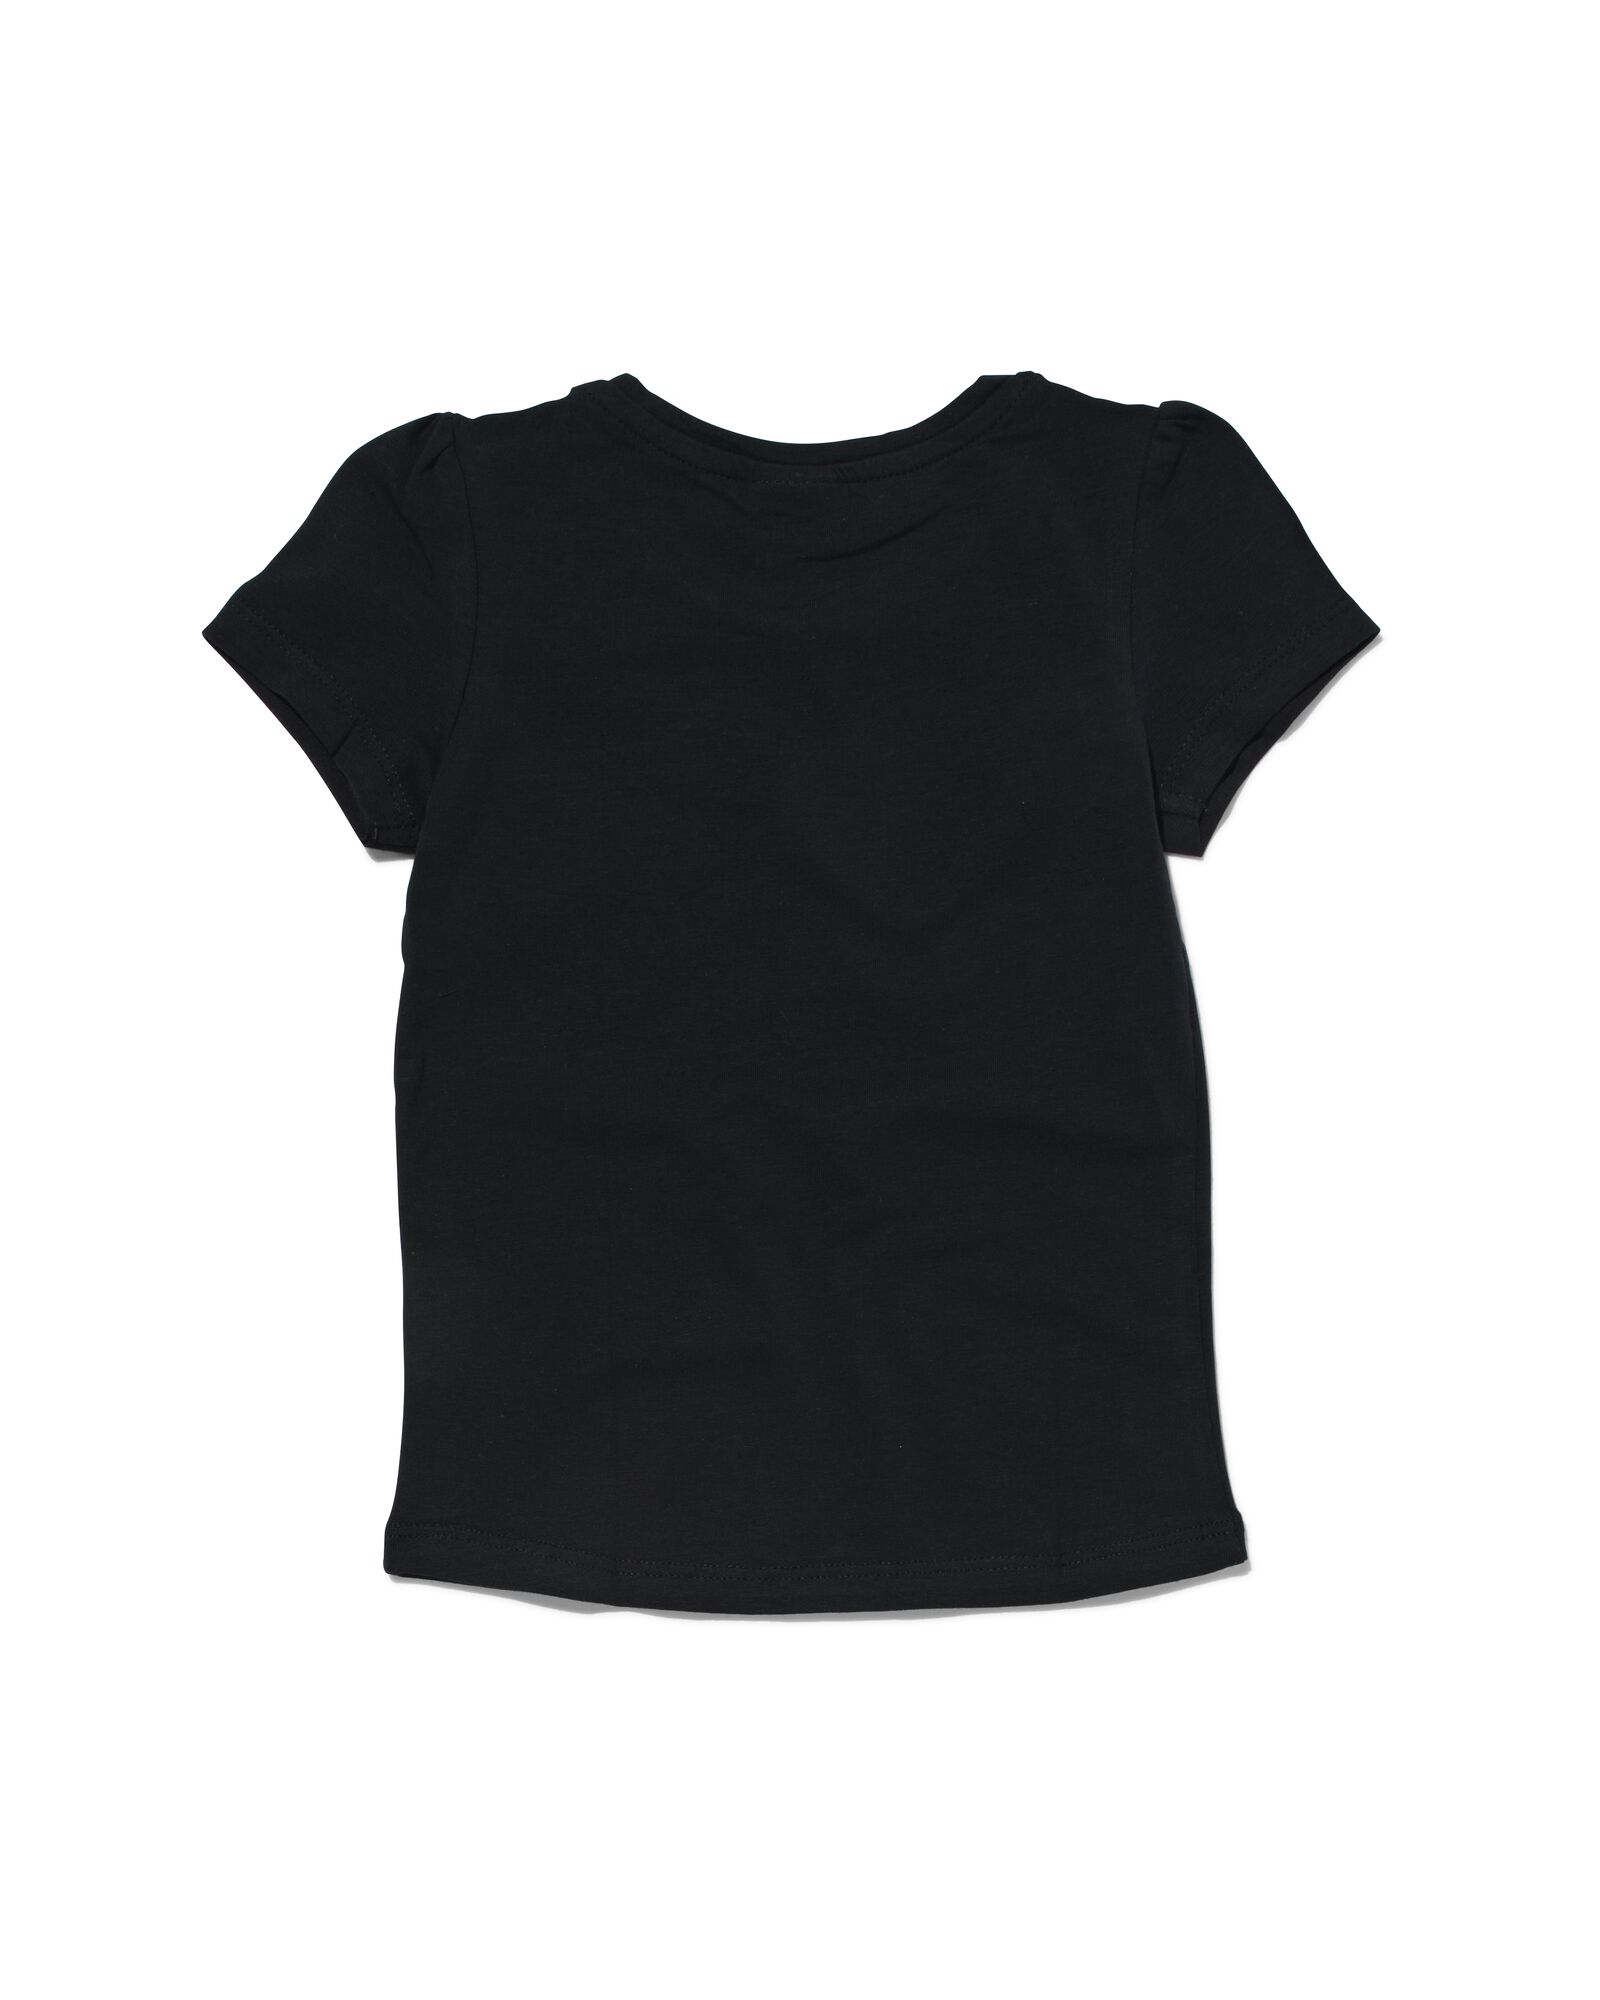 kinder t-shirt zwart 86/92 - 30843950 - HEMA